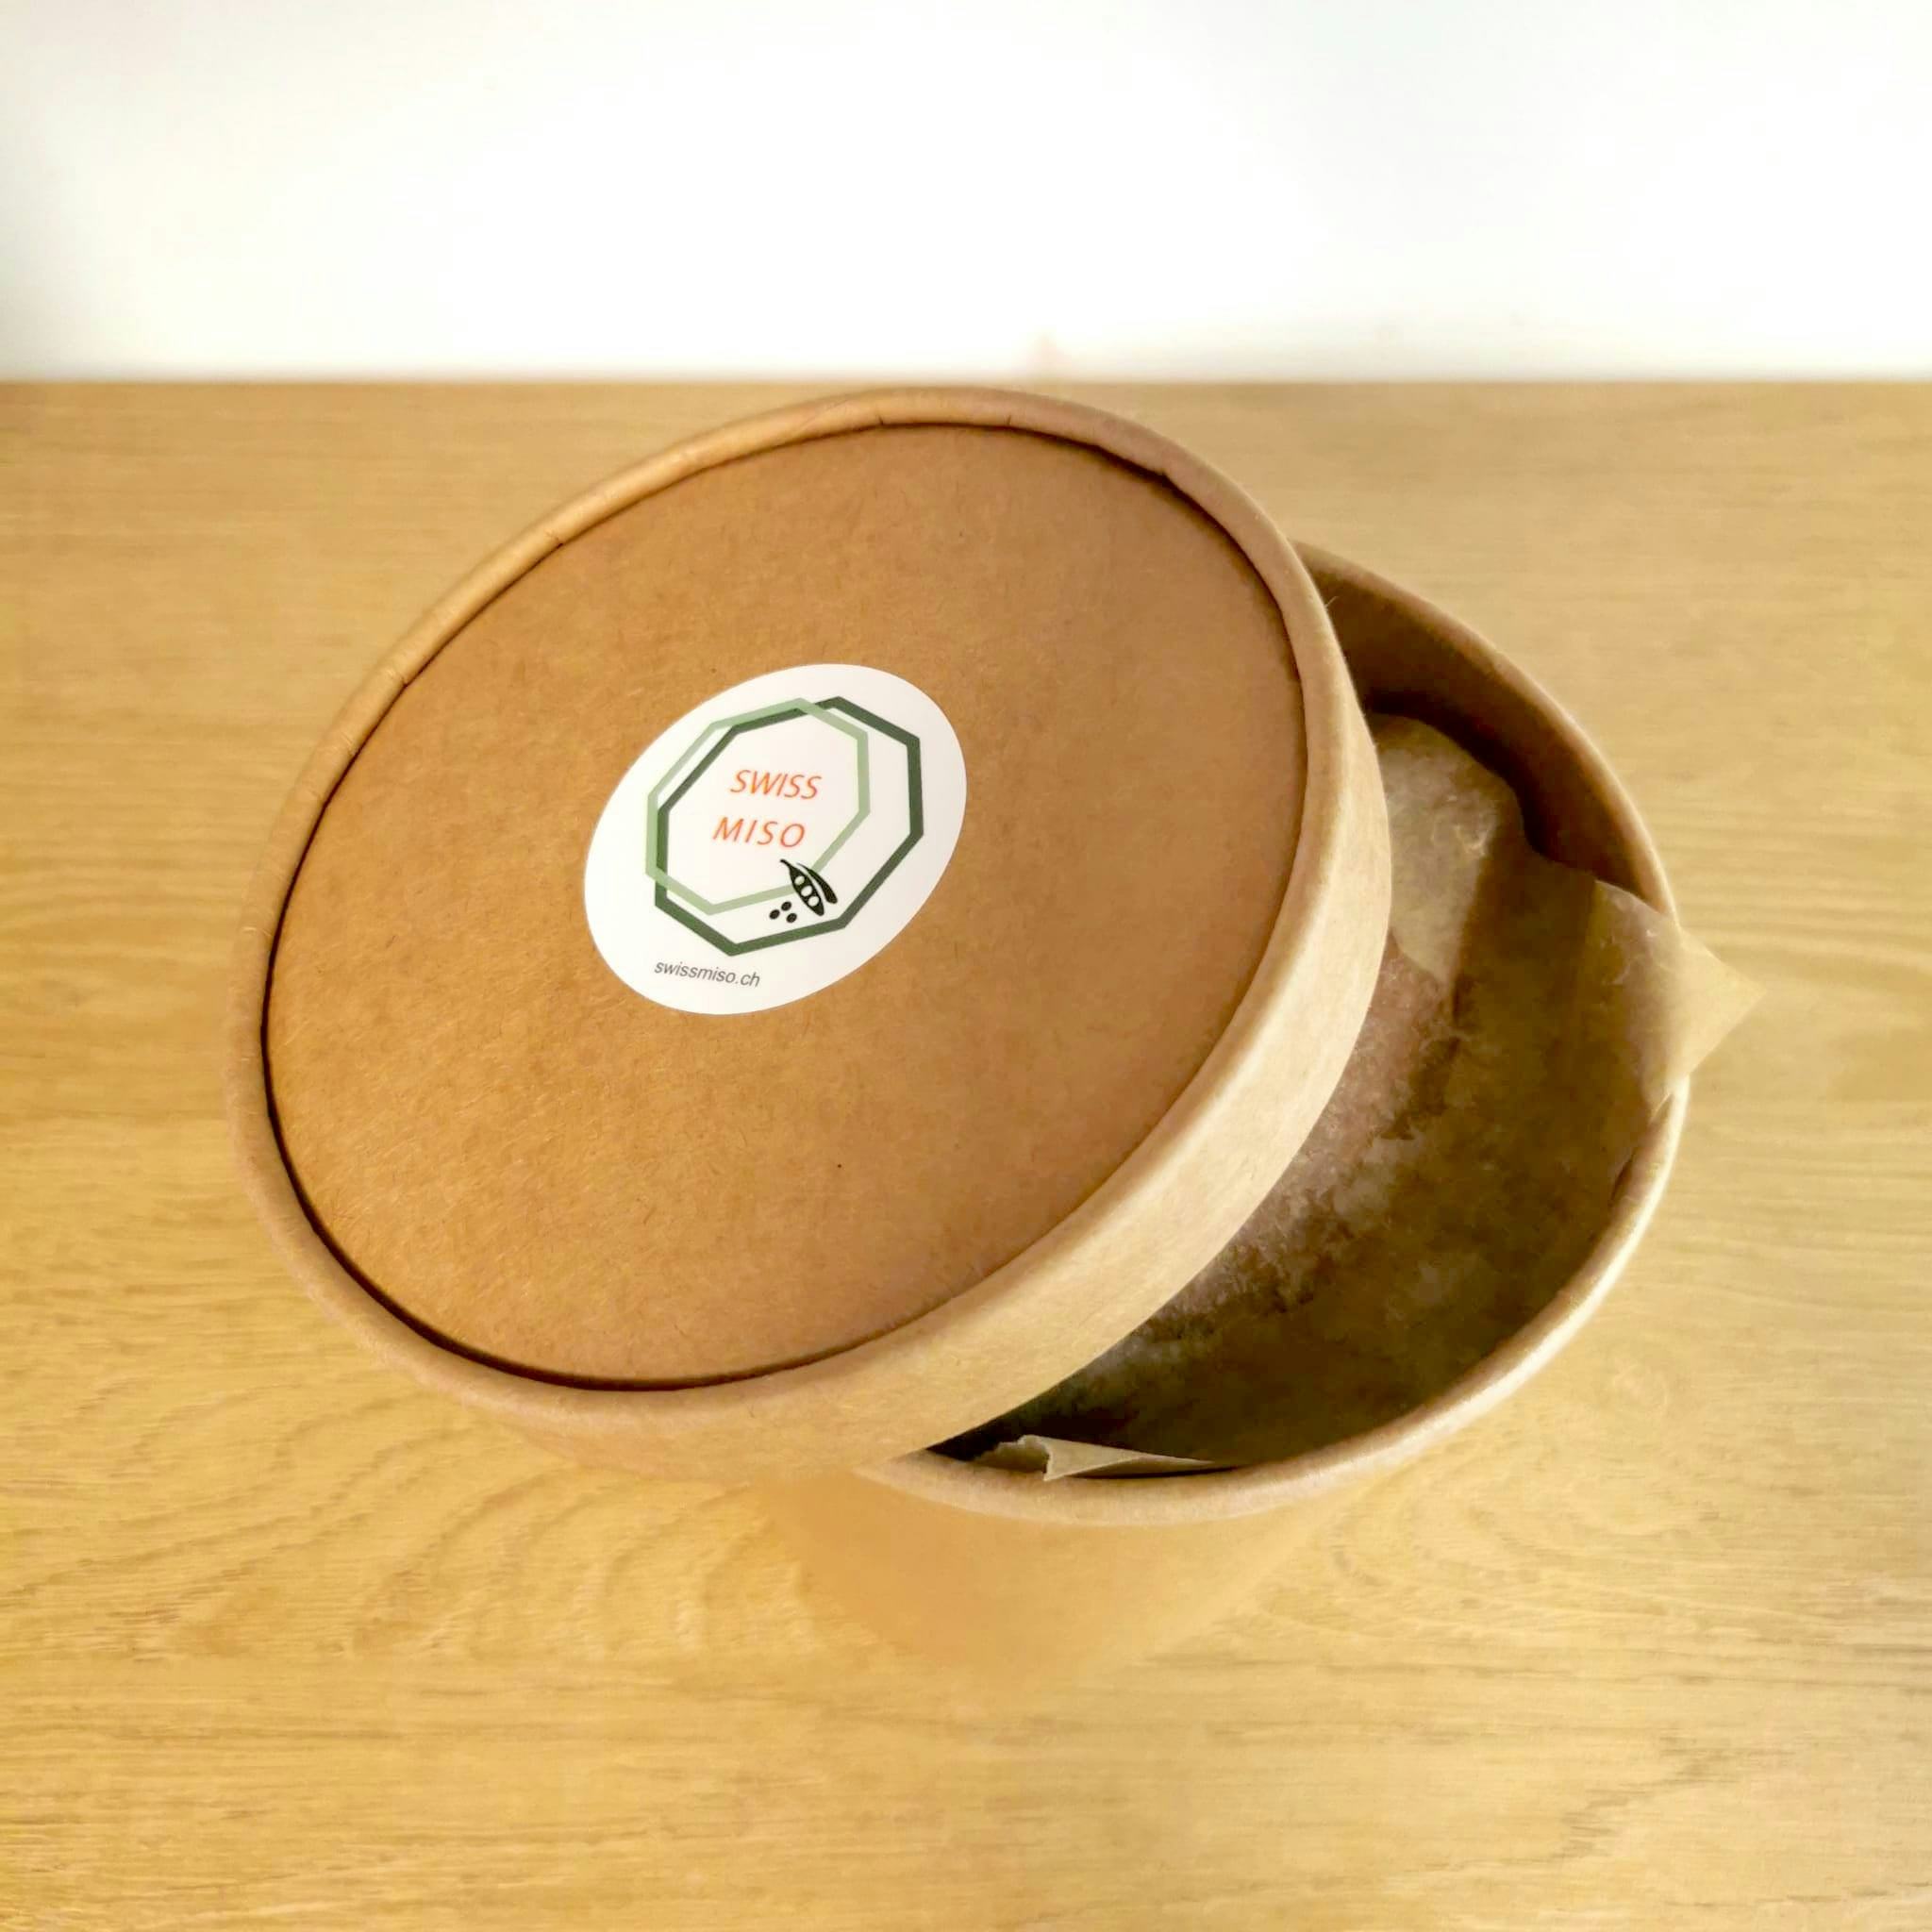 Miso d'orzo 1Kg in confezione ECO, prodotto artigianale per la vendita diretta in Svizzera